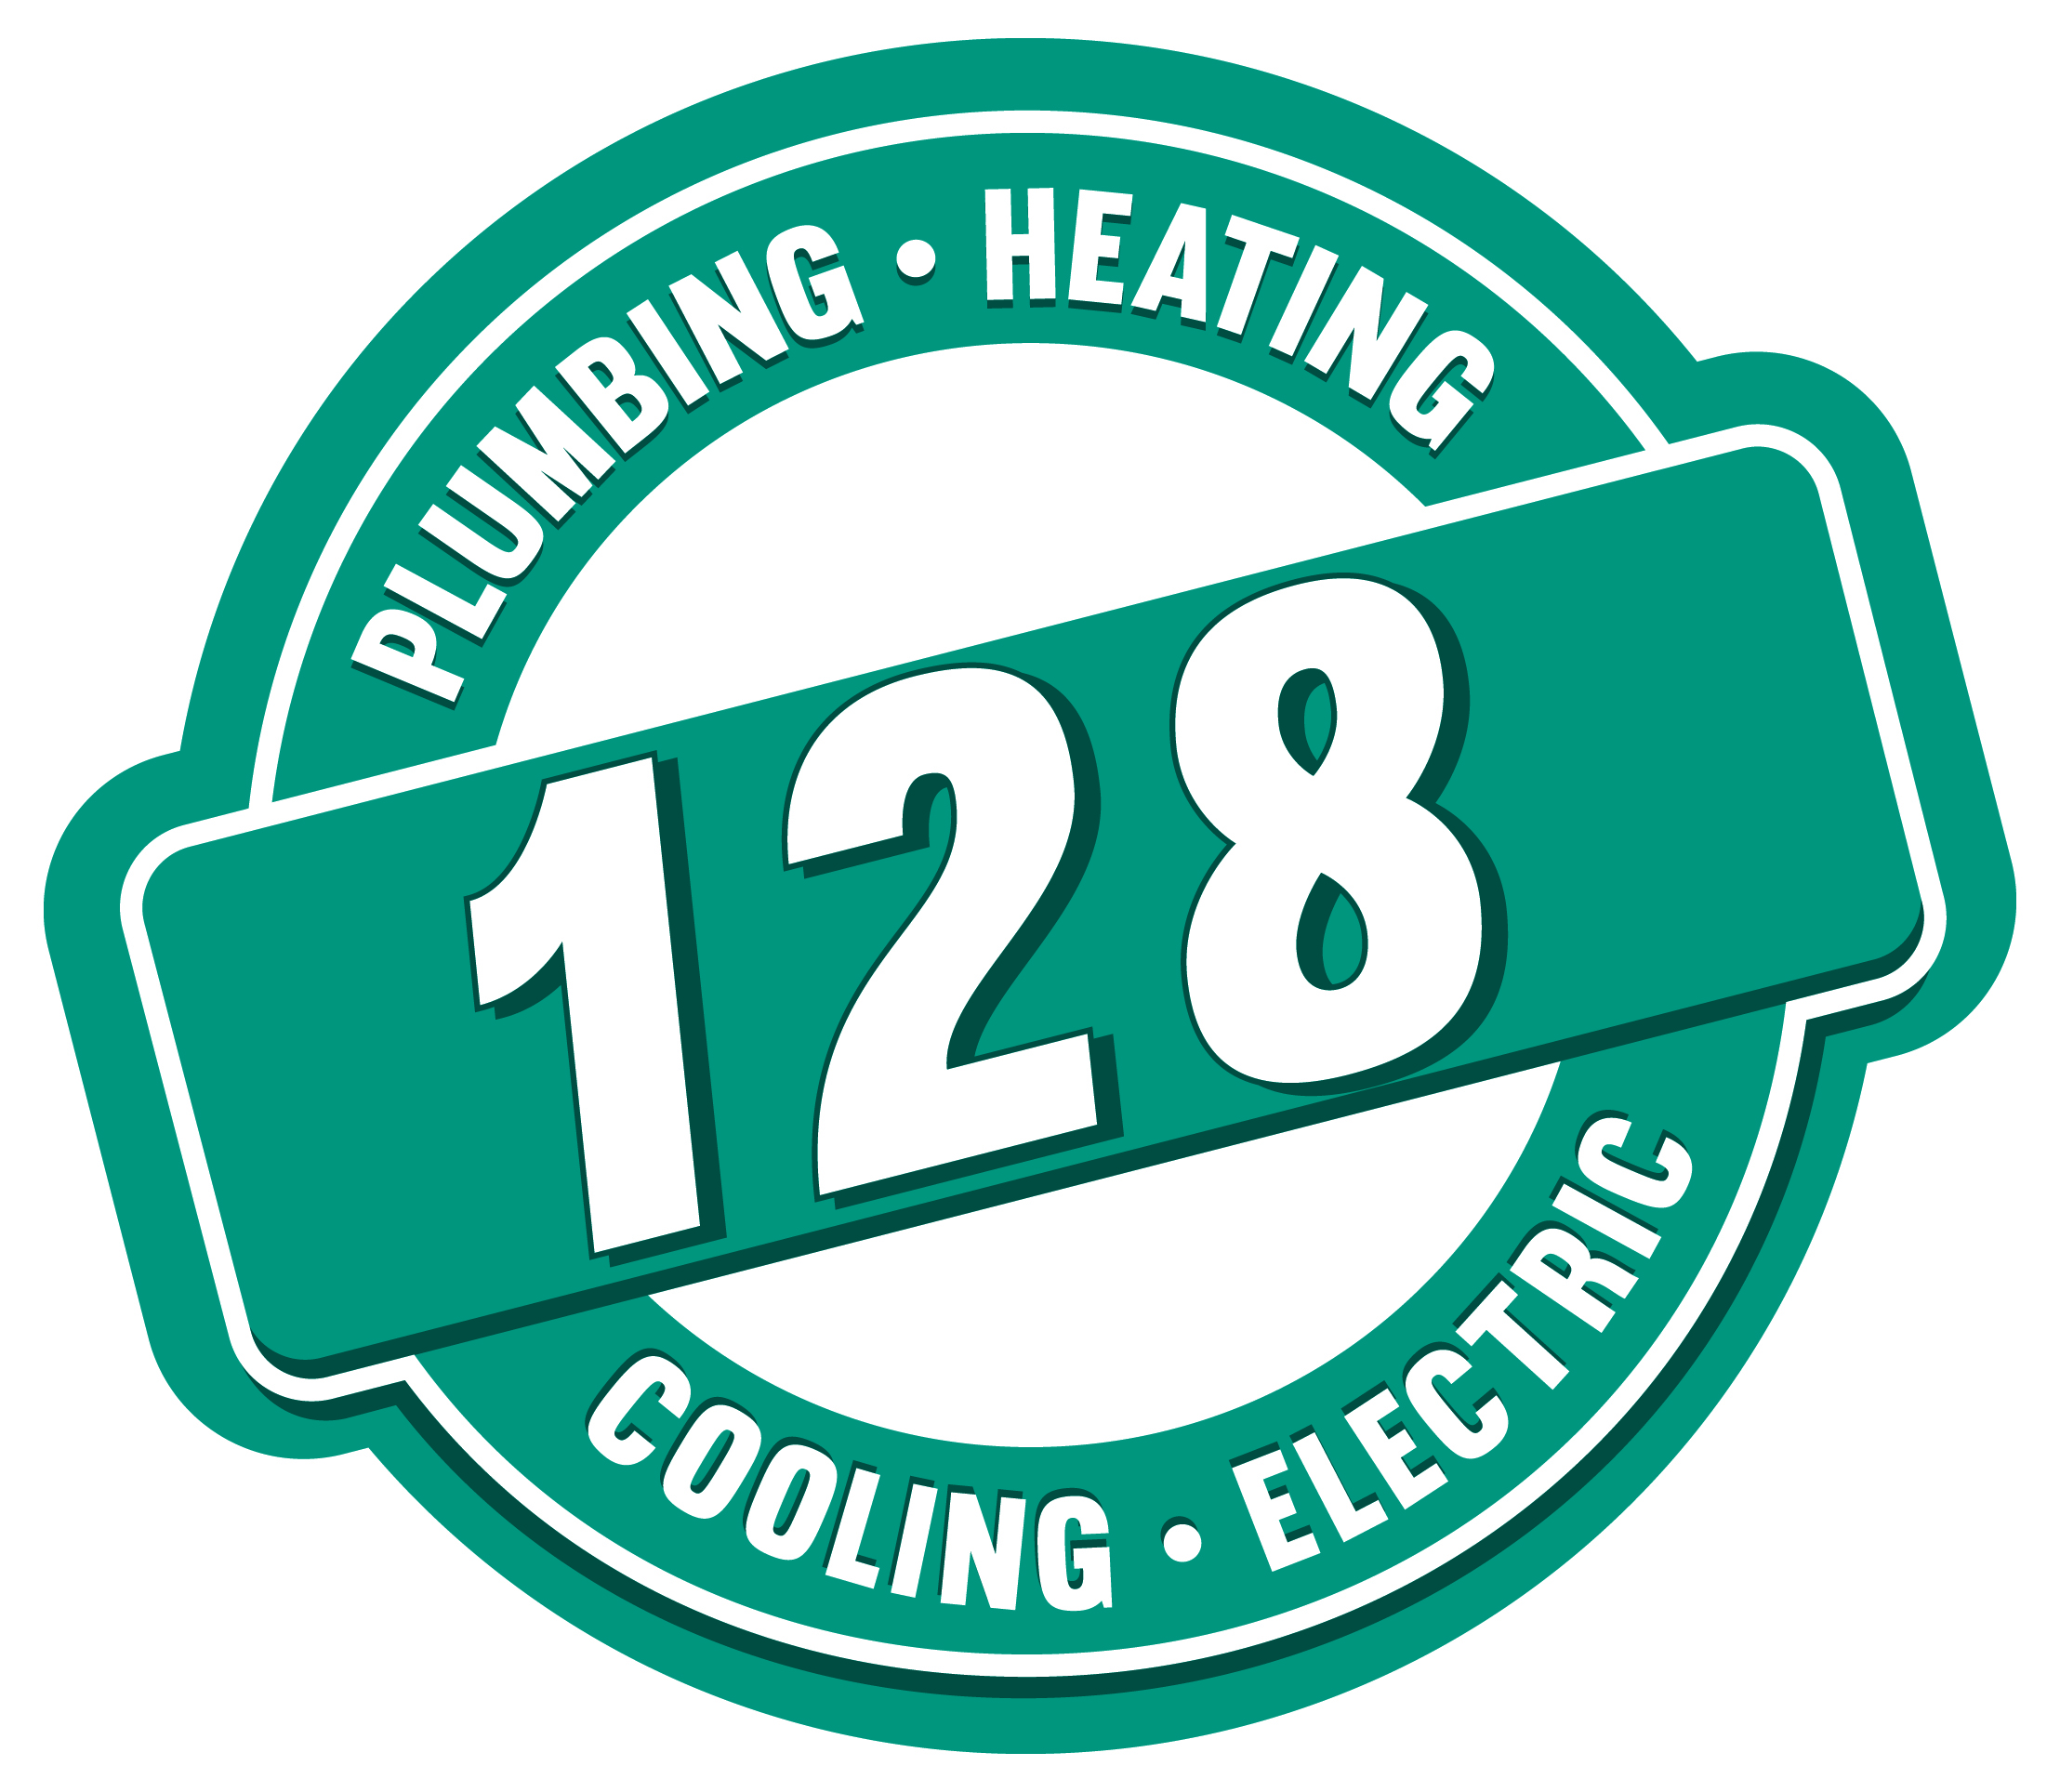 128 Plumbing and Heating, Inc. Logo